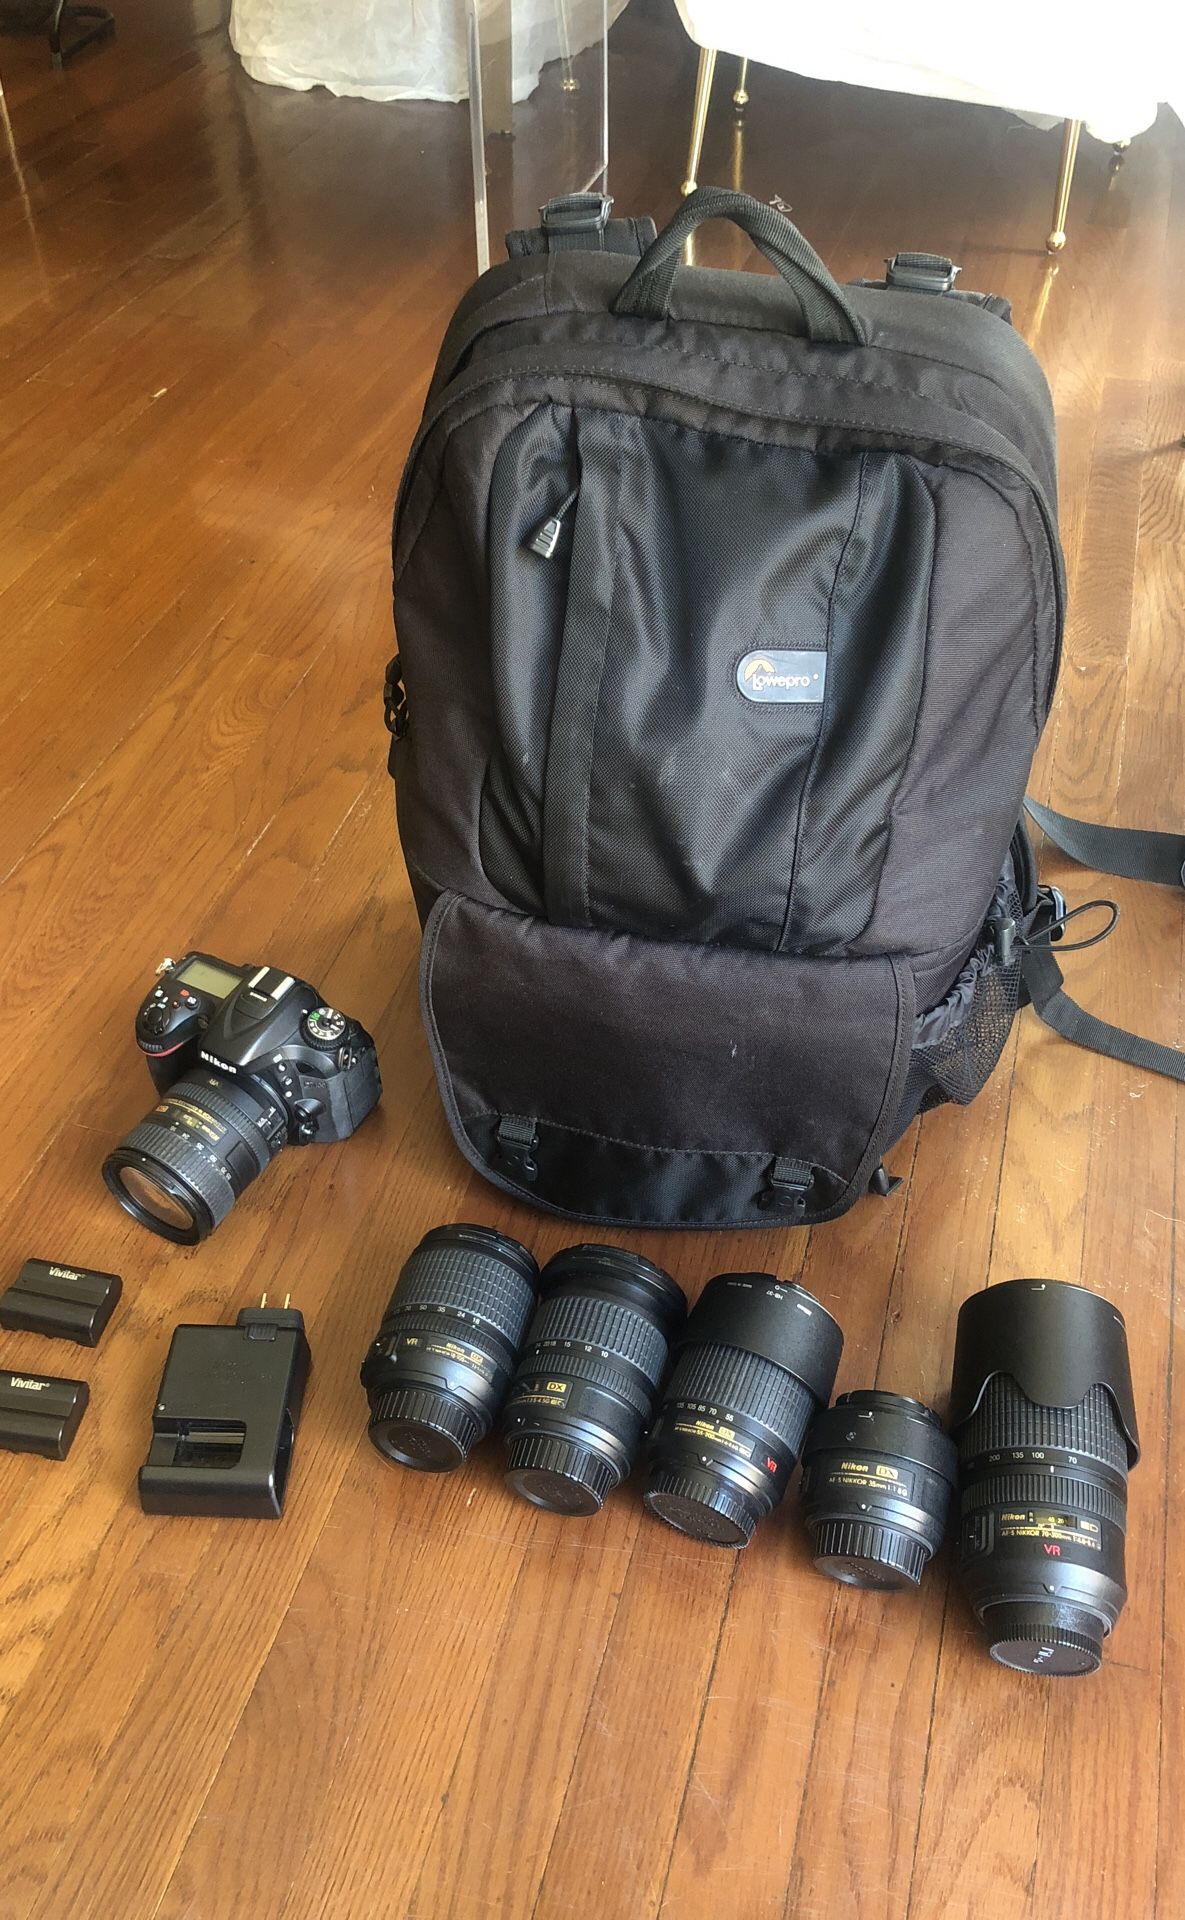 Nikon bundle: Nikon d7100, 7 lenses, Lowepro backpack, Lee Filter big stopper, + extra batteries